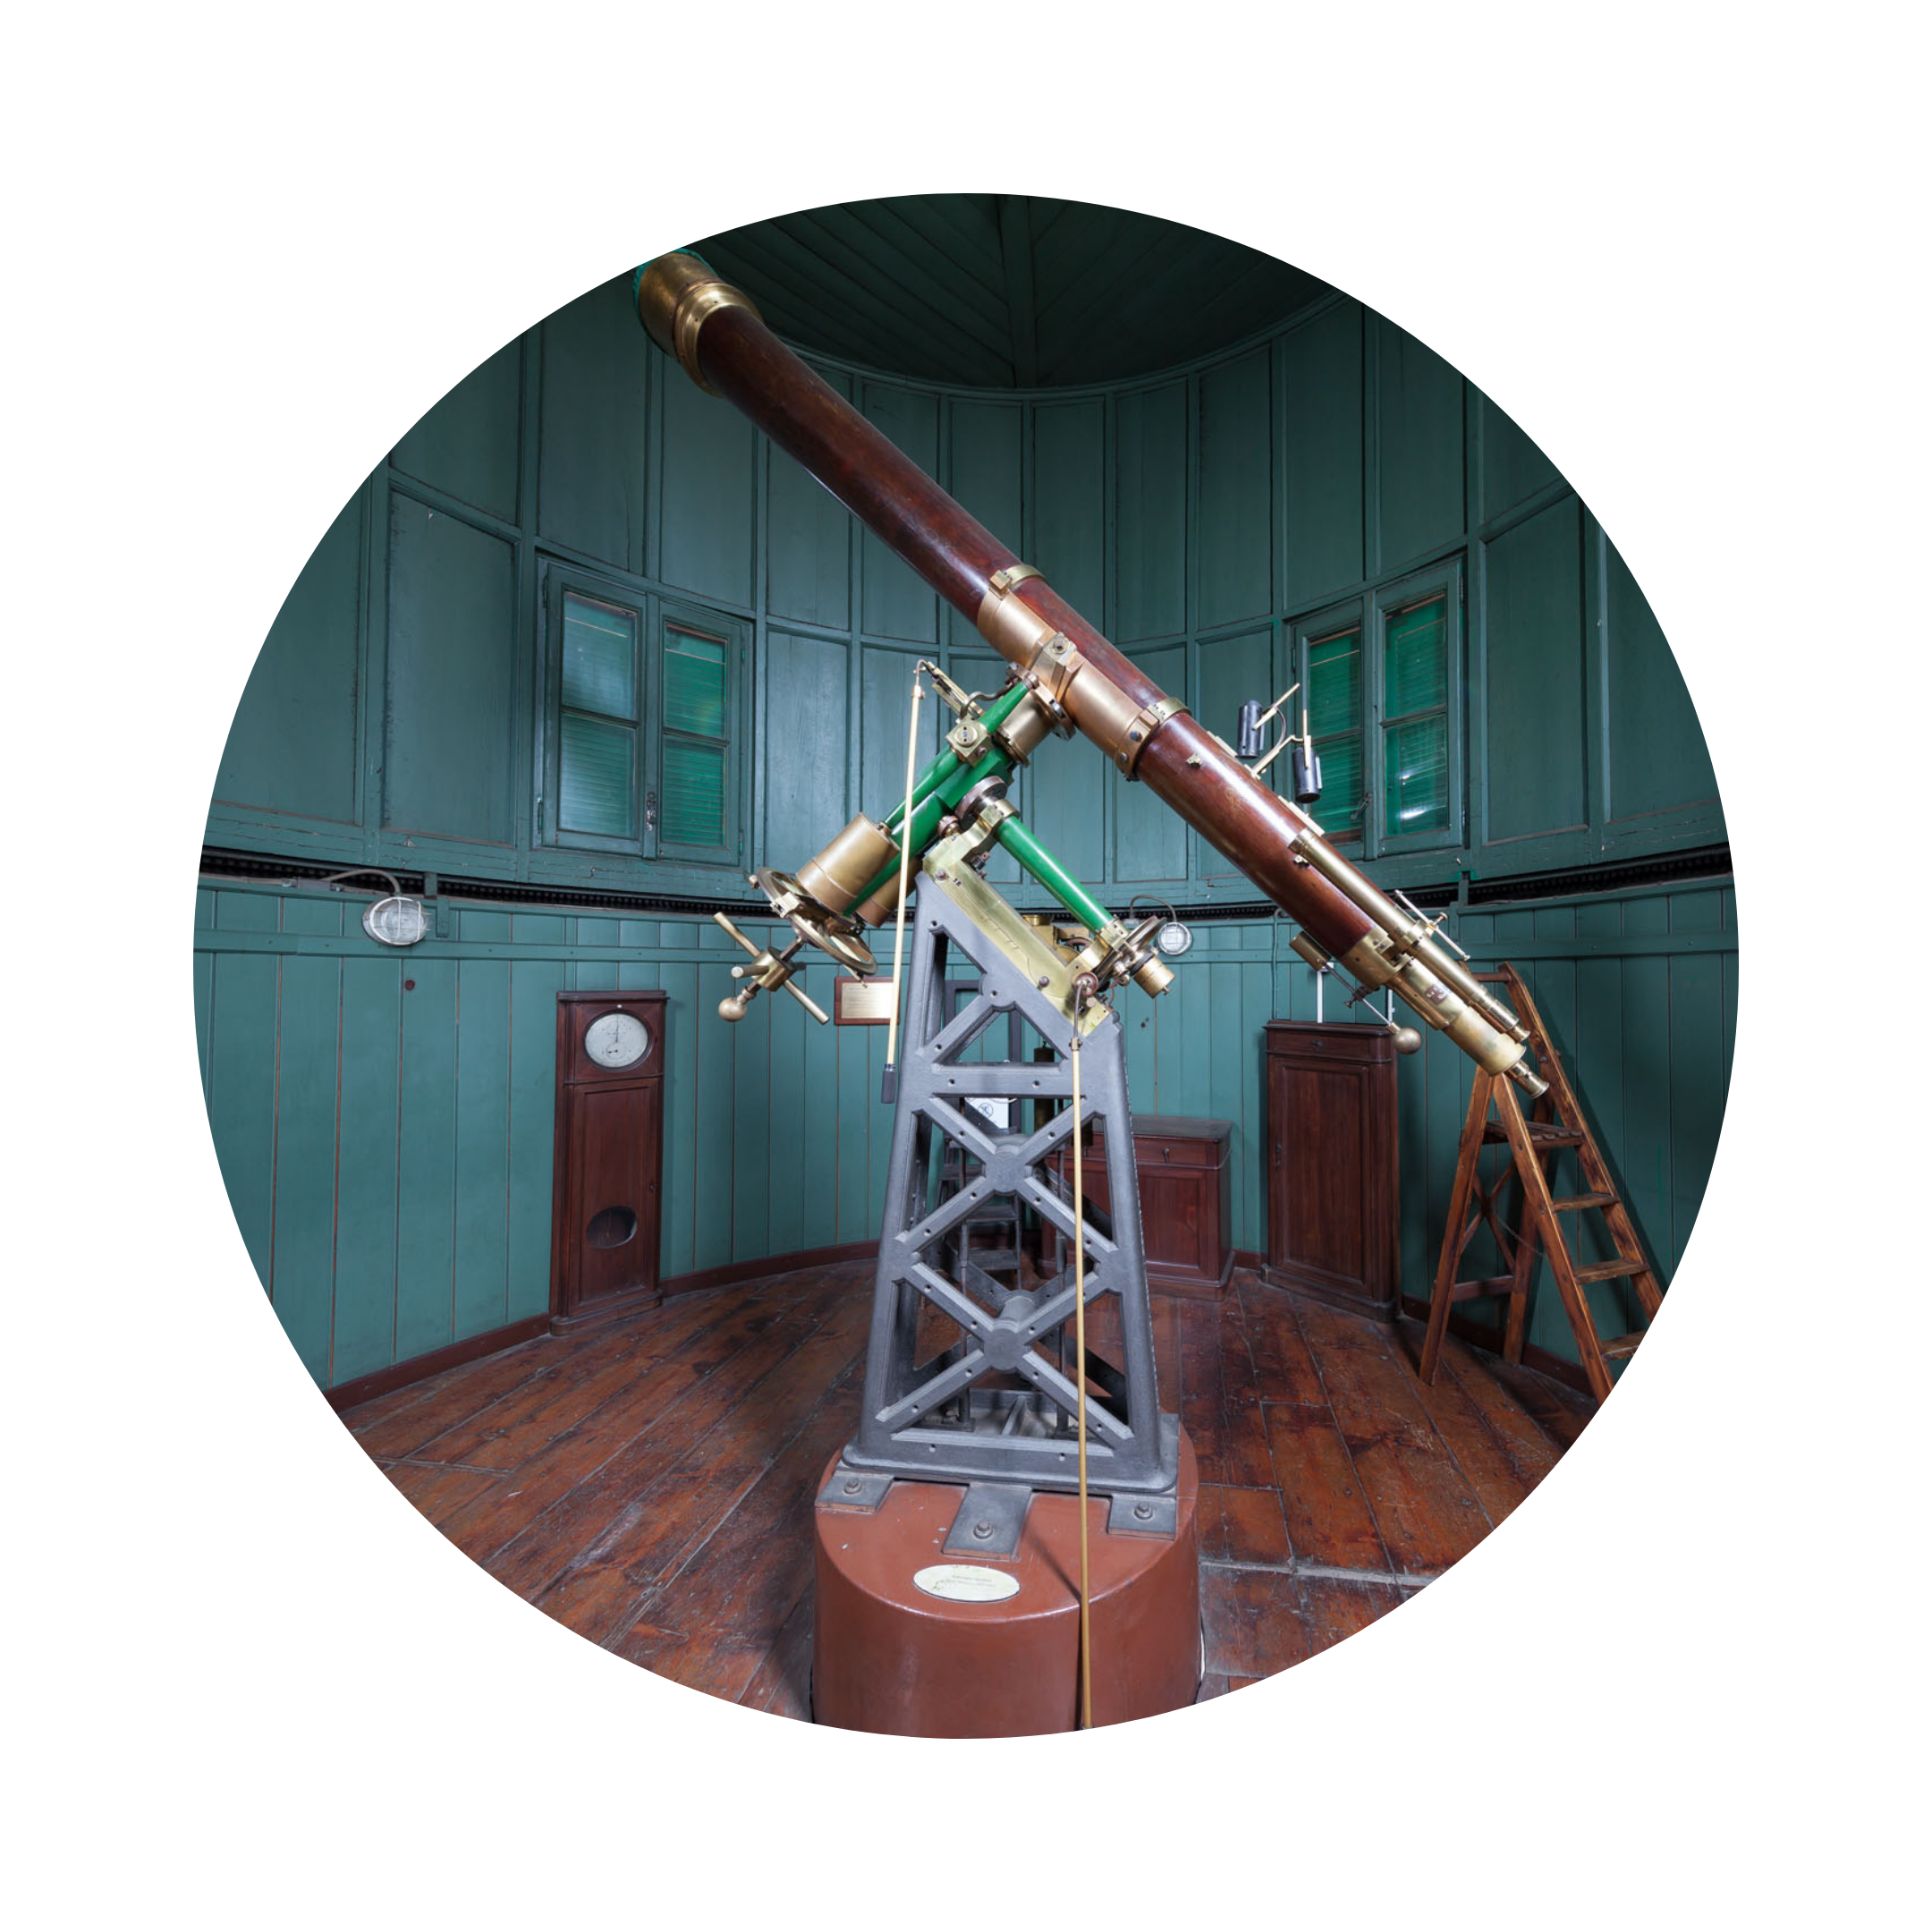 Il 2 e il 4 gennaio alle ore 15 sarà possibile effettuare la visita guidata della galleria degli strumenti del MusAB e della cupola Schiaparelli con un astronomo.